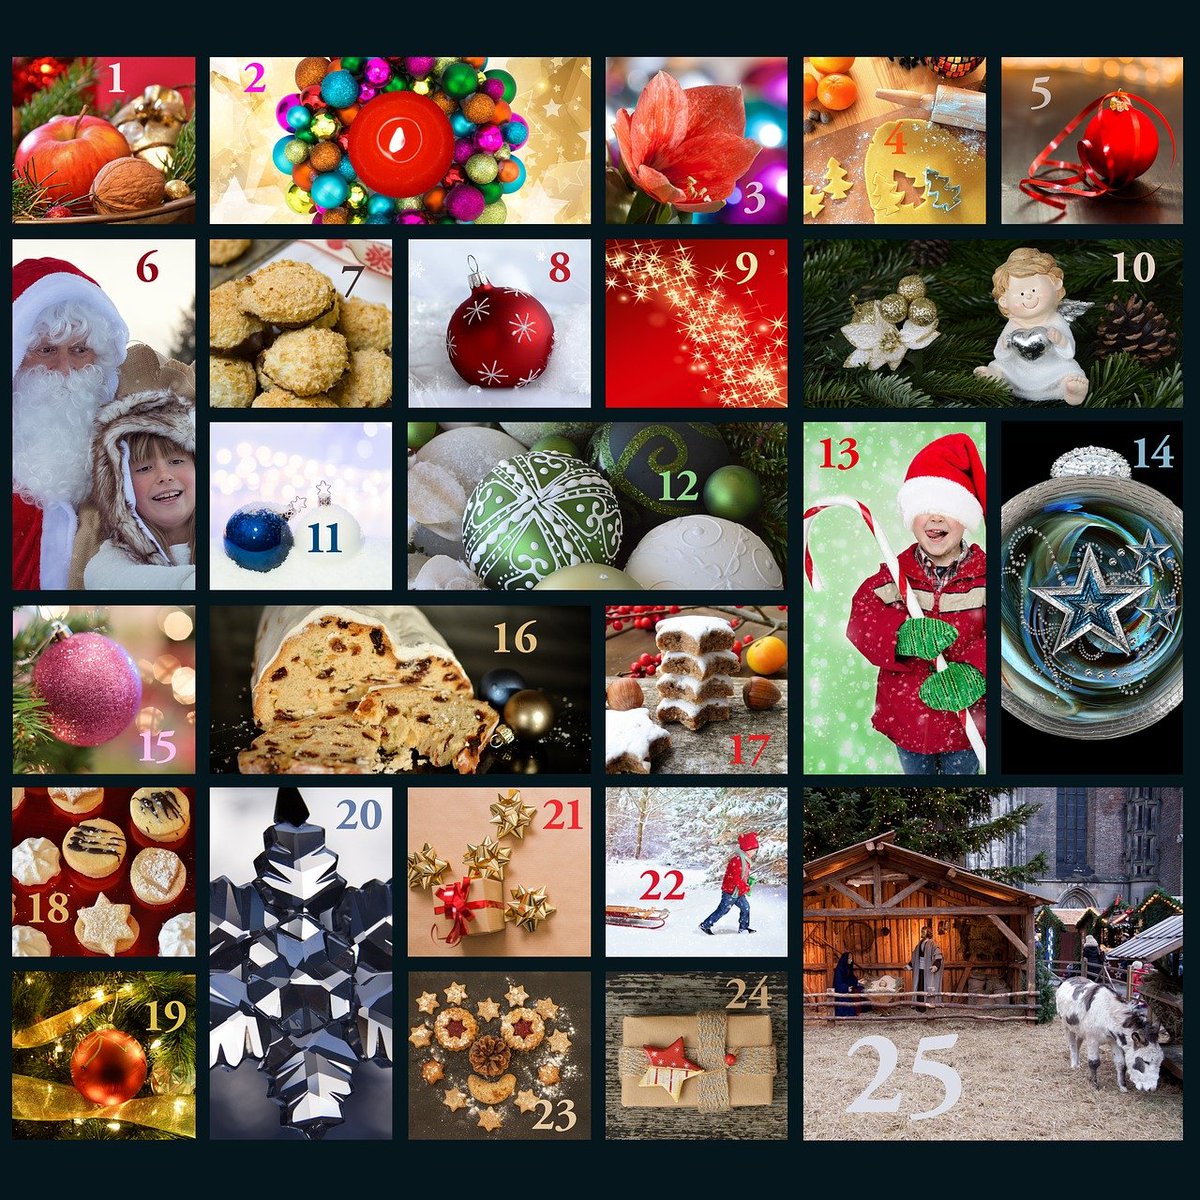 Nu har nätbutikerna äntligen börjat med sina Dagens Lucka-erbjudanden / julkalendrar. Här kan man varje dag, under 24h, hitta ETT riktigt bra erbjudande som passar bra som julklapp.

Hitta hela listan här: presenttips.se/jul/julkalendr…

#DagensLucka #Lucka1 #Julkalendern #REA